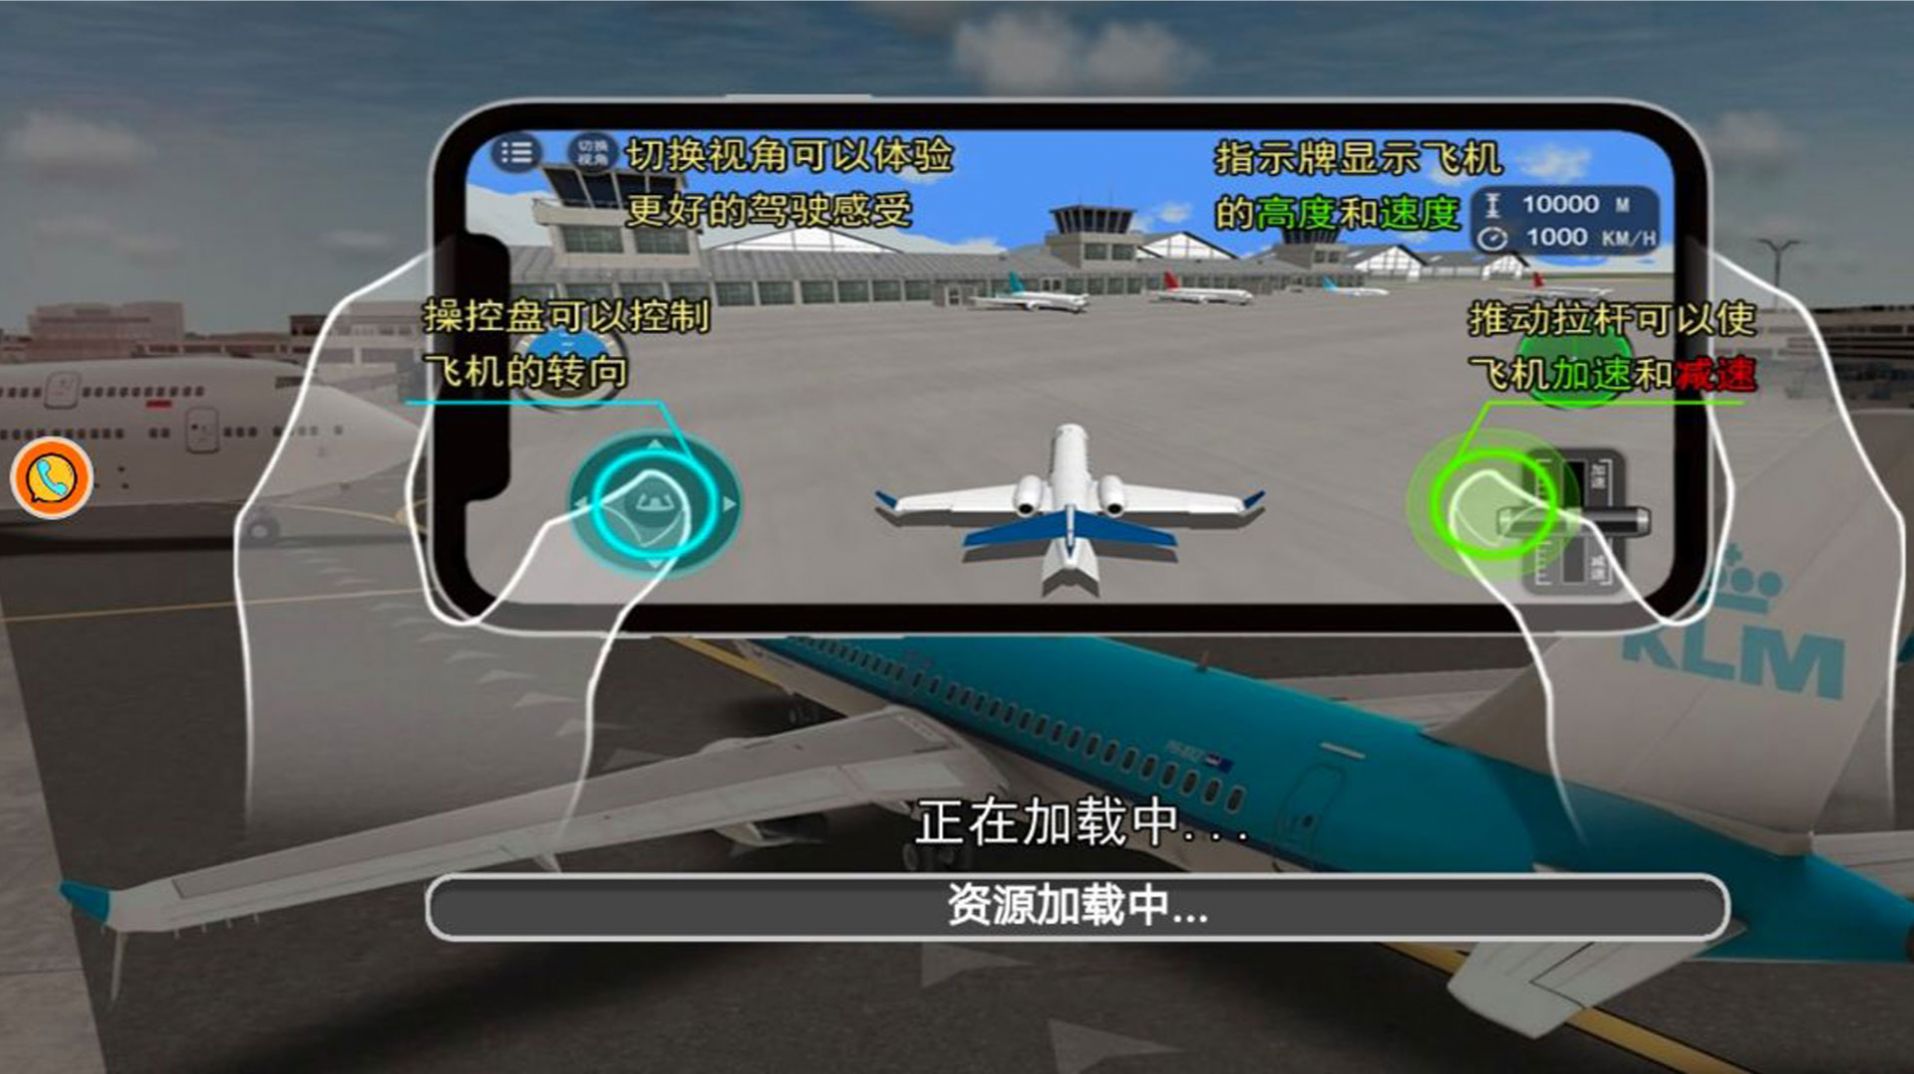 模拟飞行老司机开飞机游戏中文版安卓版下载-模拟飞行老司机开飞机游戏中文版手游下载